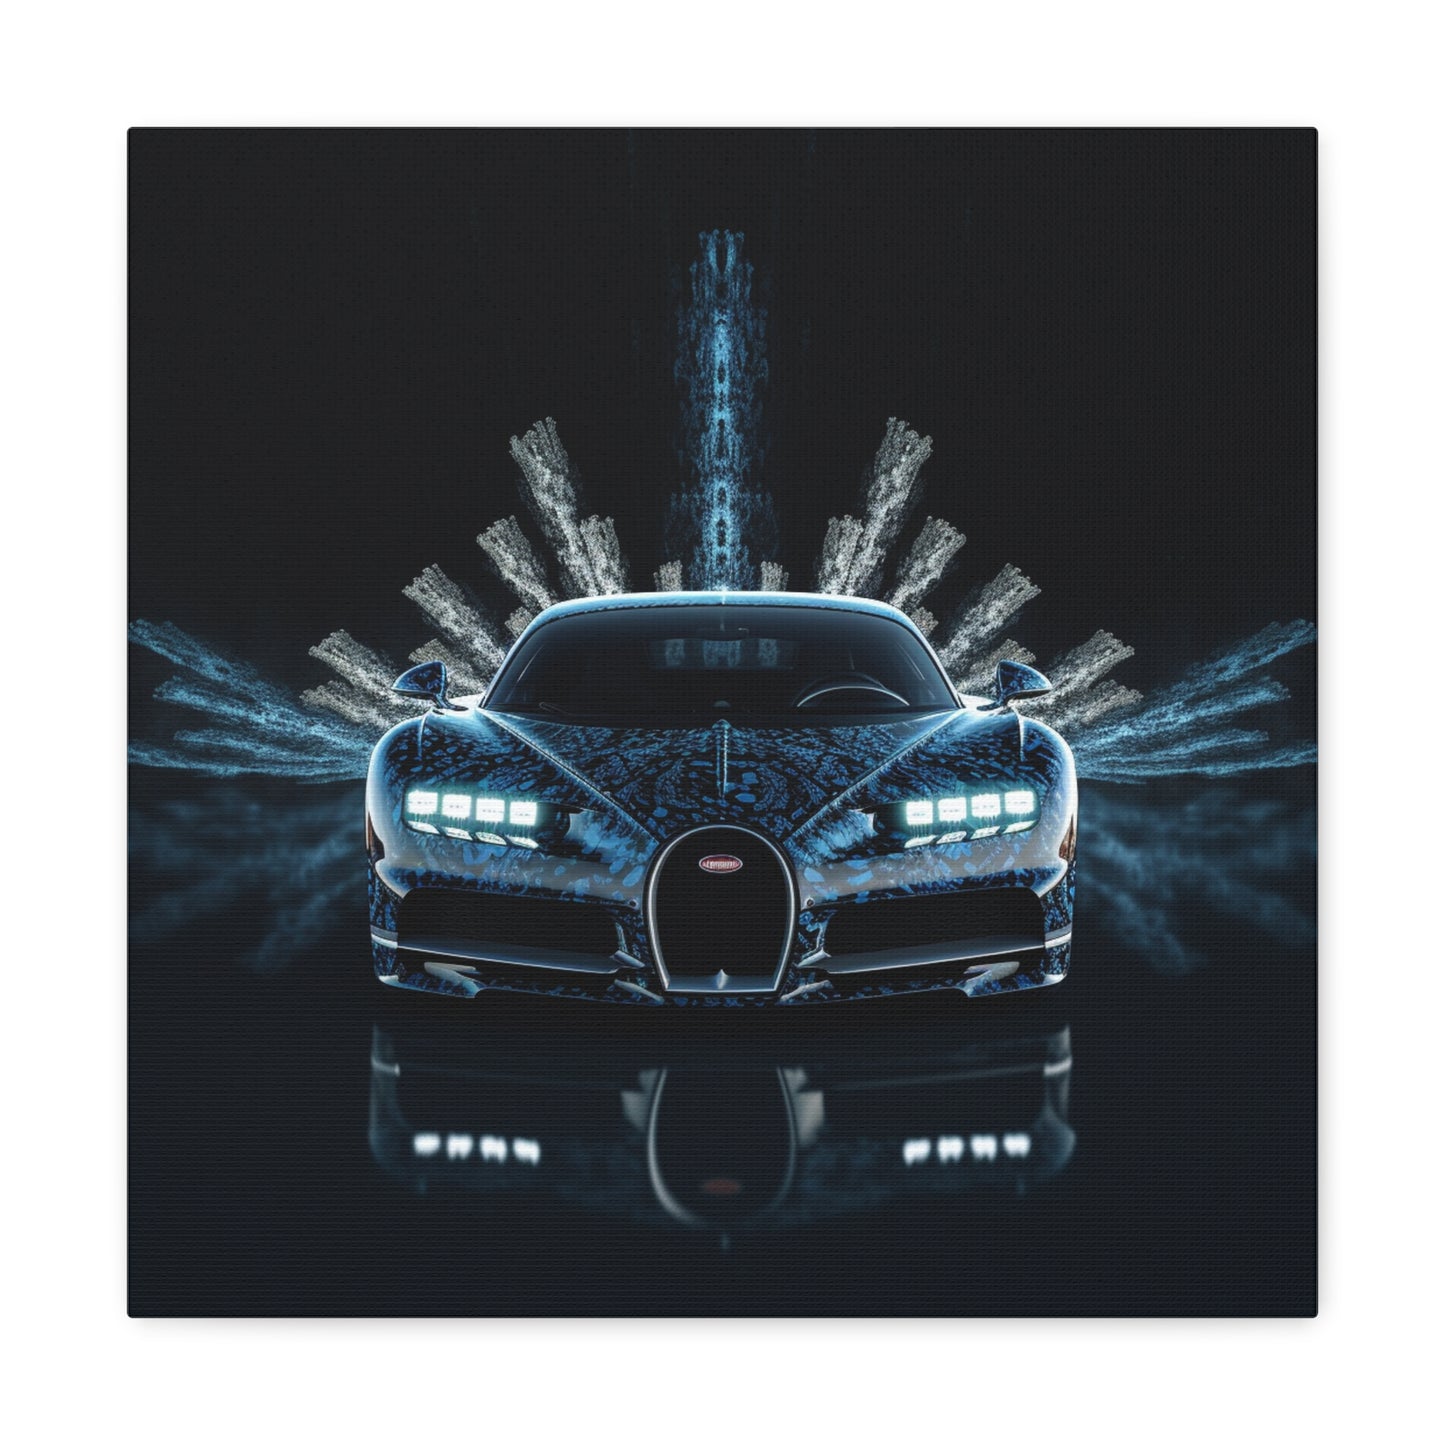 Canvas Gallery Wraps Hyper Bugatti 2